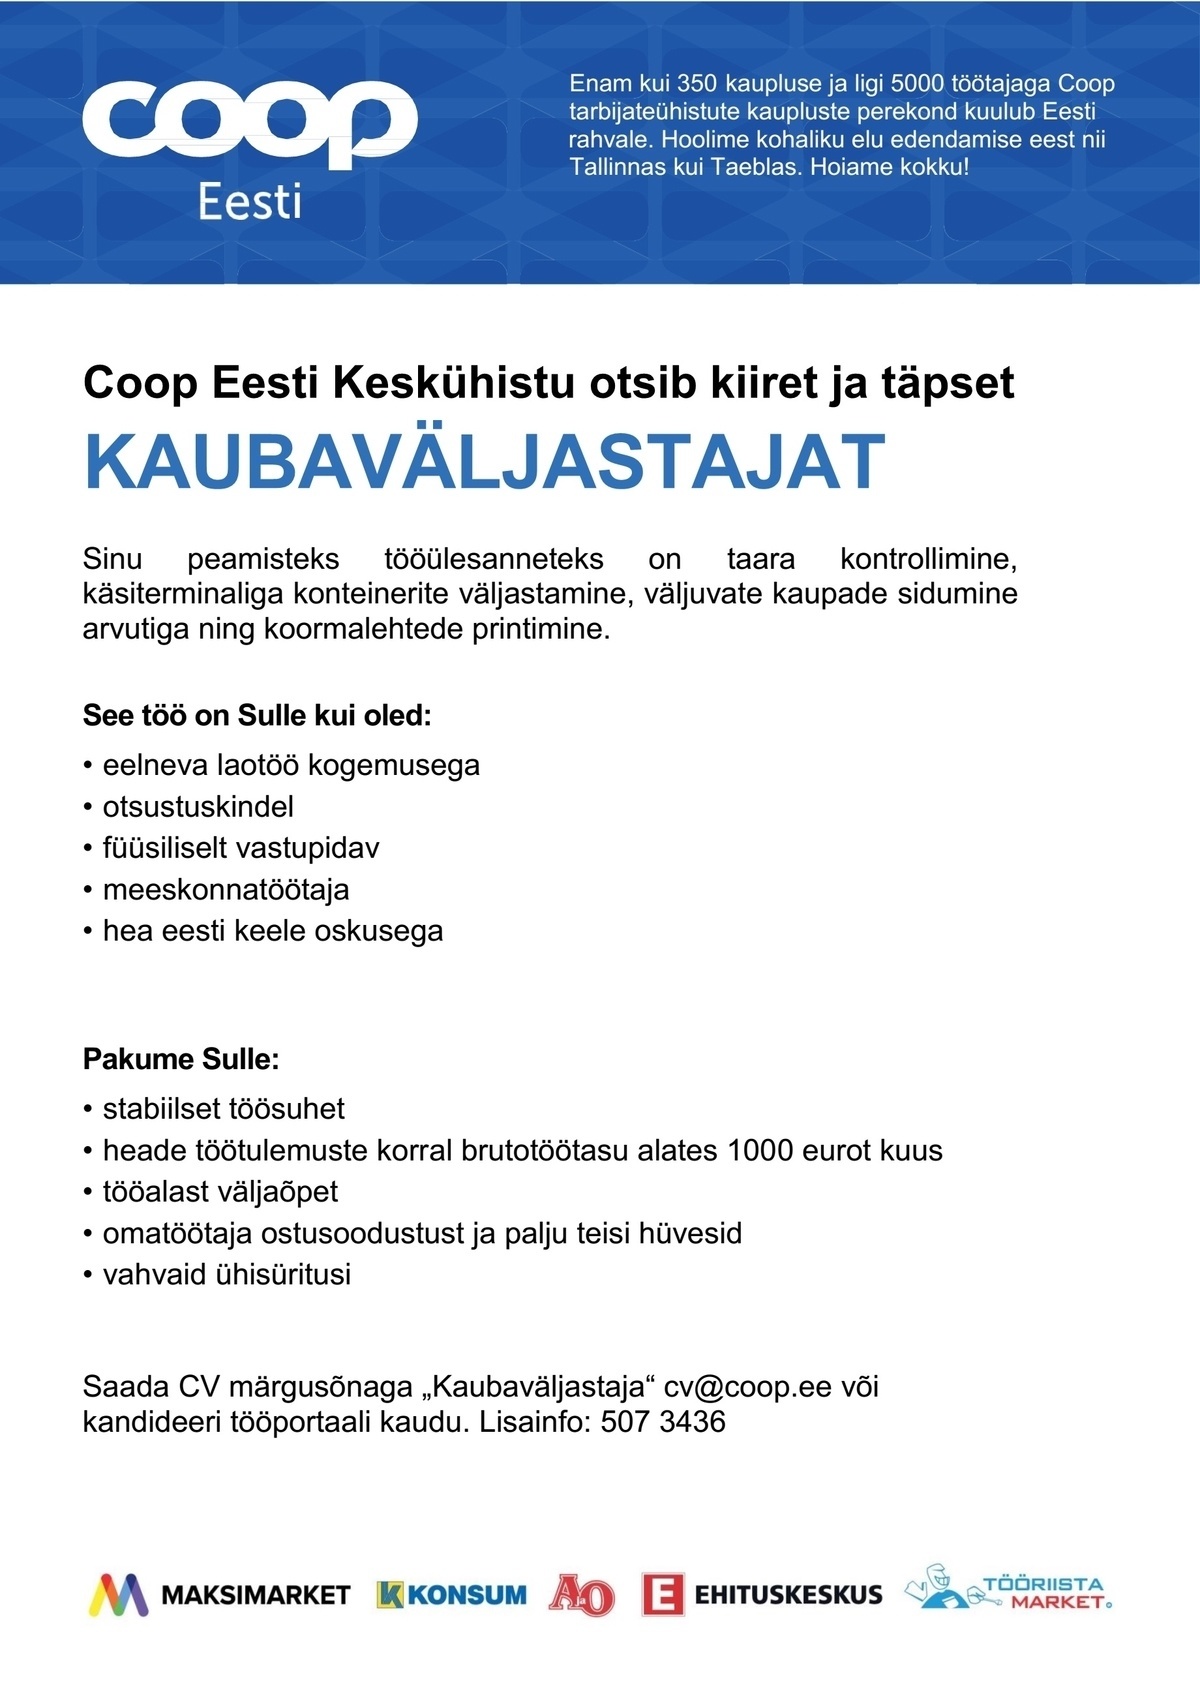 Coop Eesti Keskühistu Kaubaväljastaja (jaheladu)